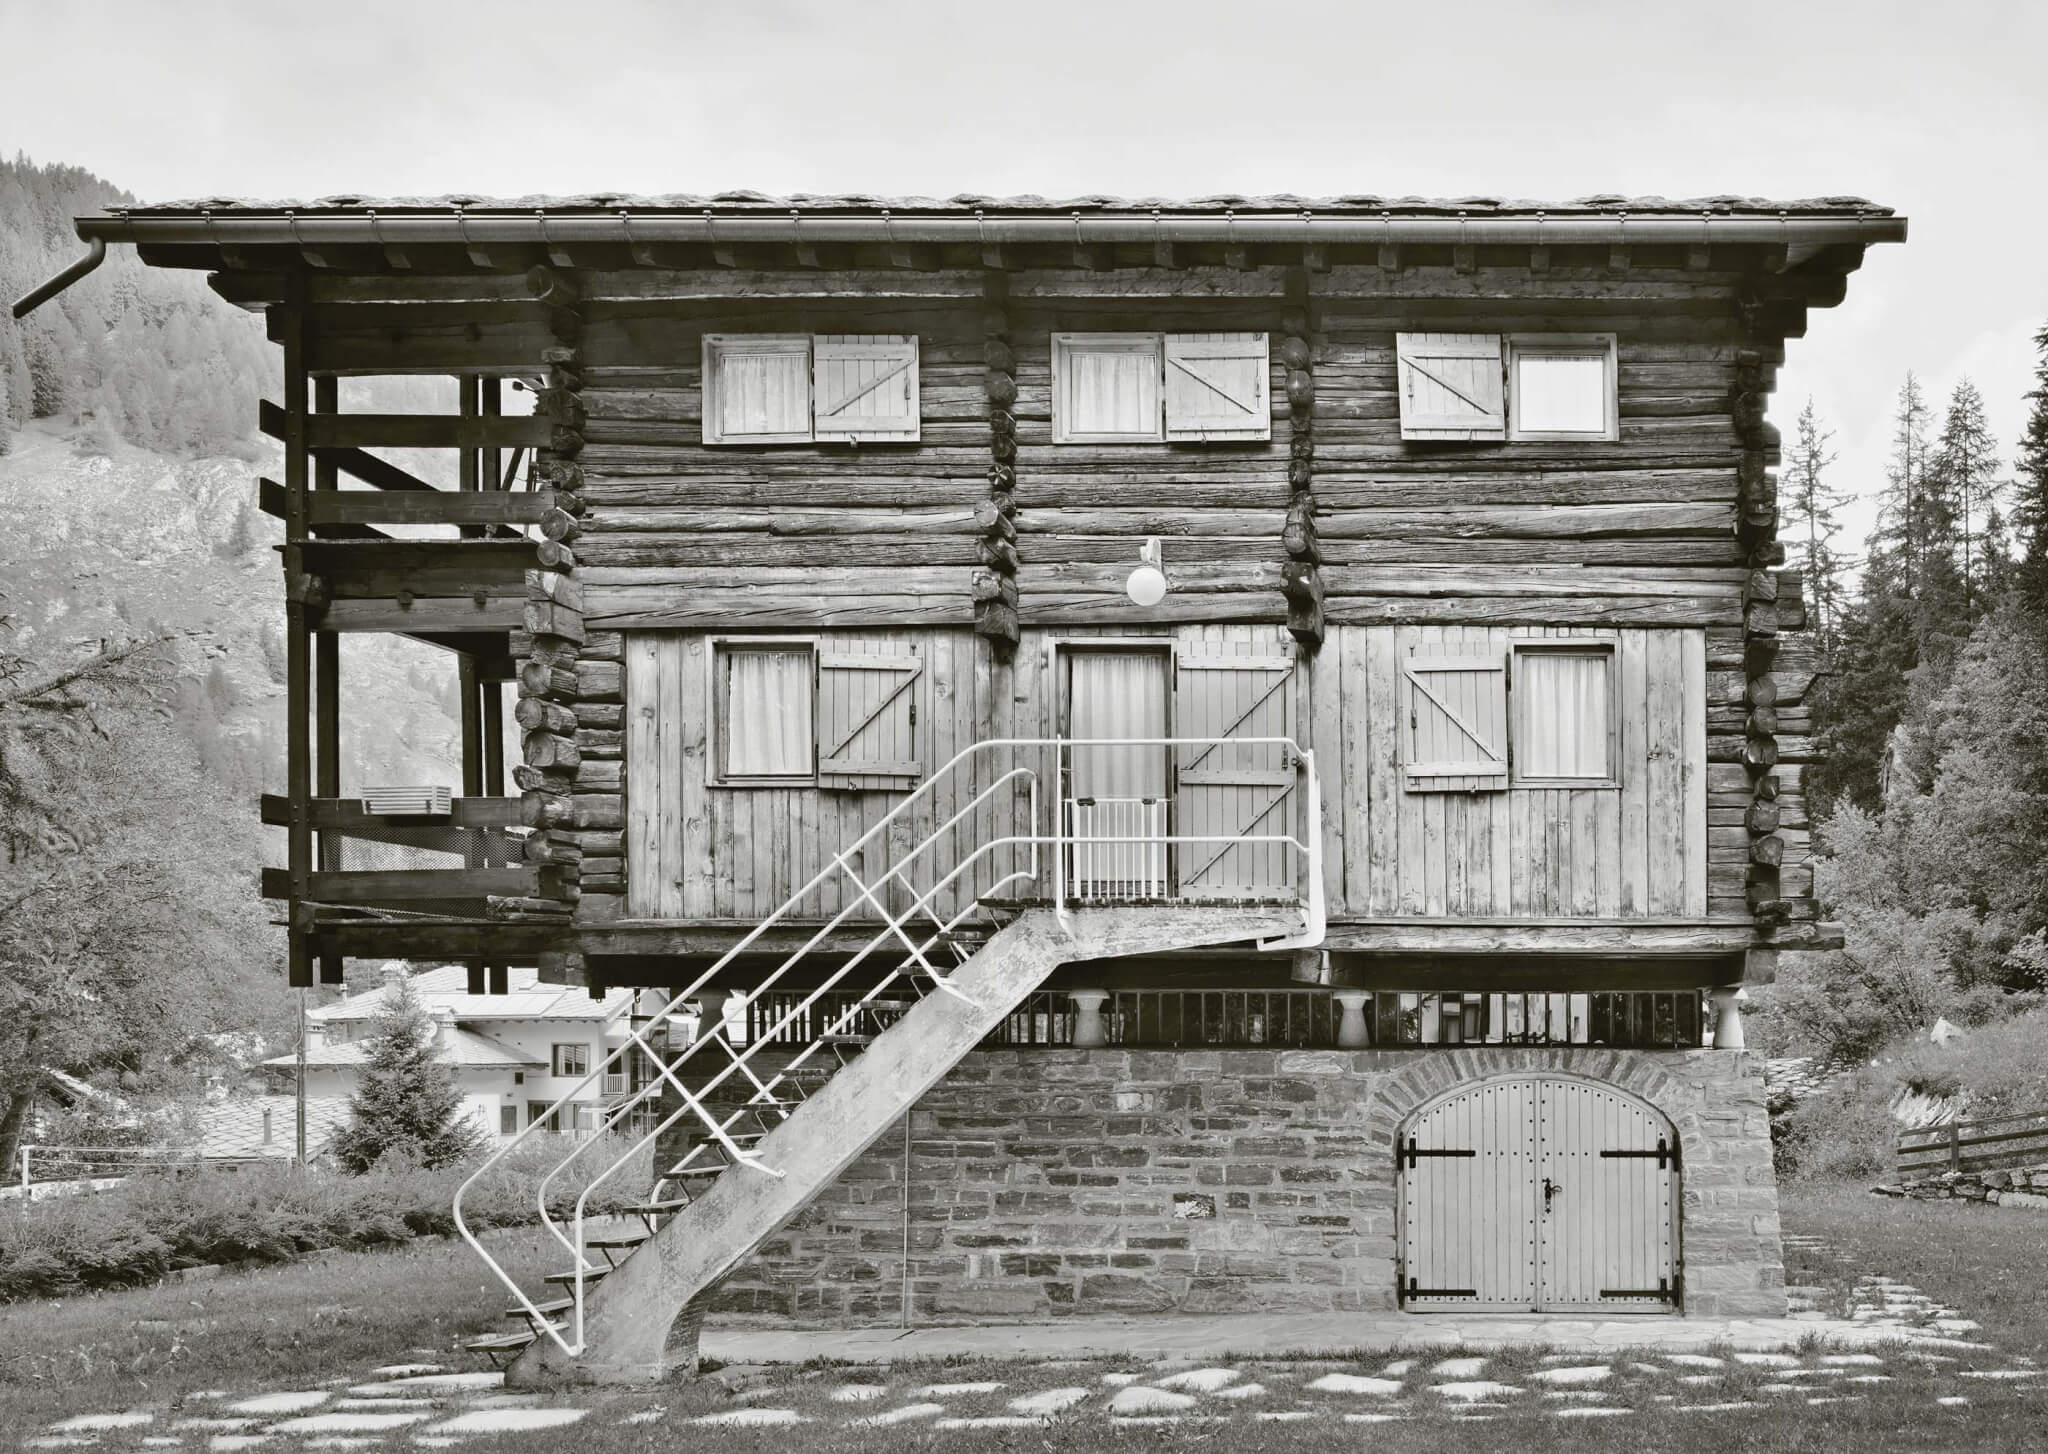 ع، سیاه و سفید از ساختمان چوبی بر روی پایه